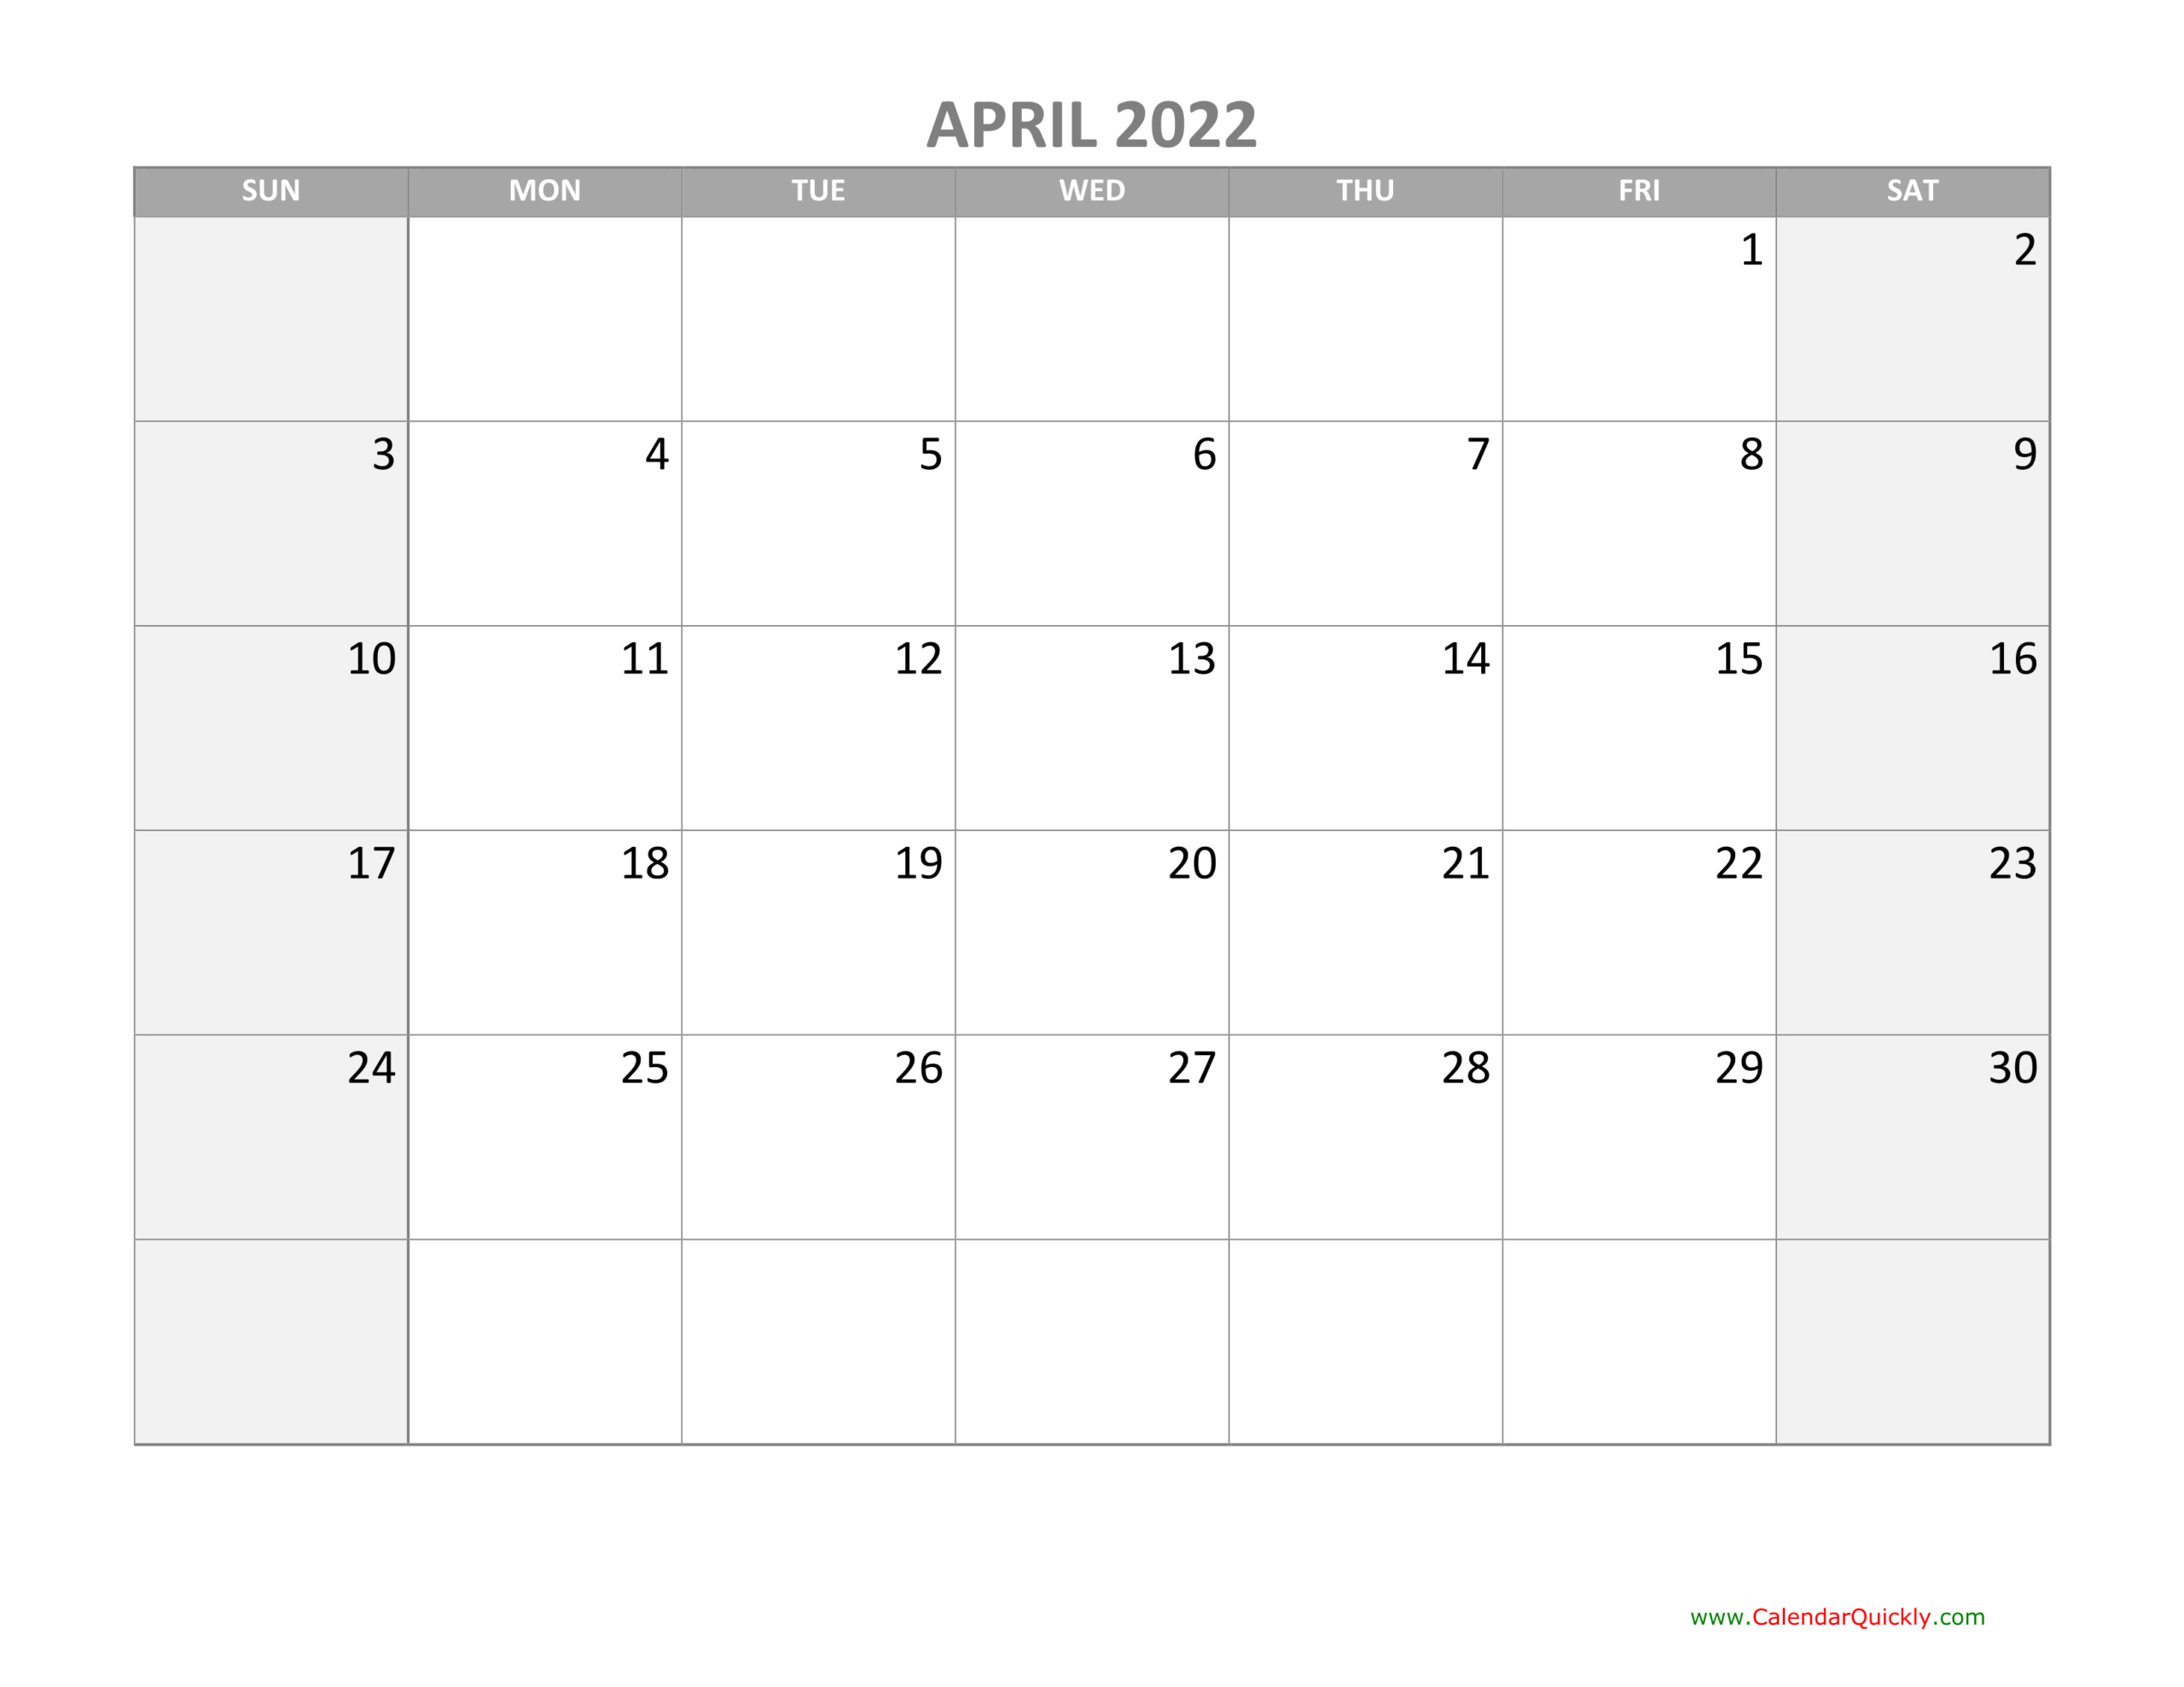 April Calendar 2022 With Holidays | Calendar Quickly  Calendar February March April 2022